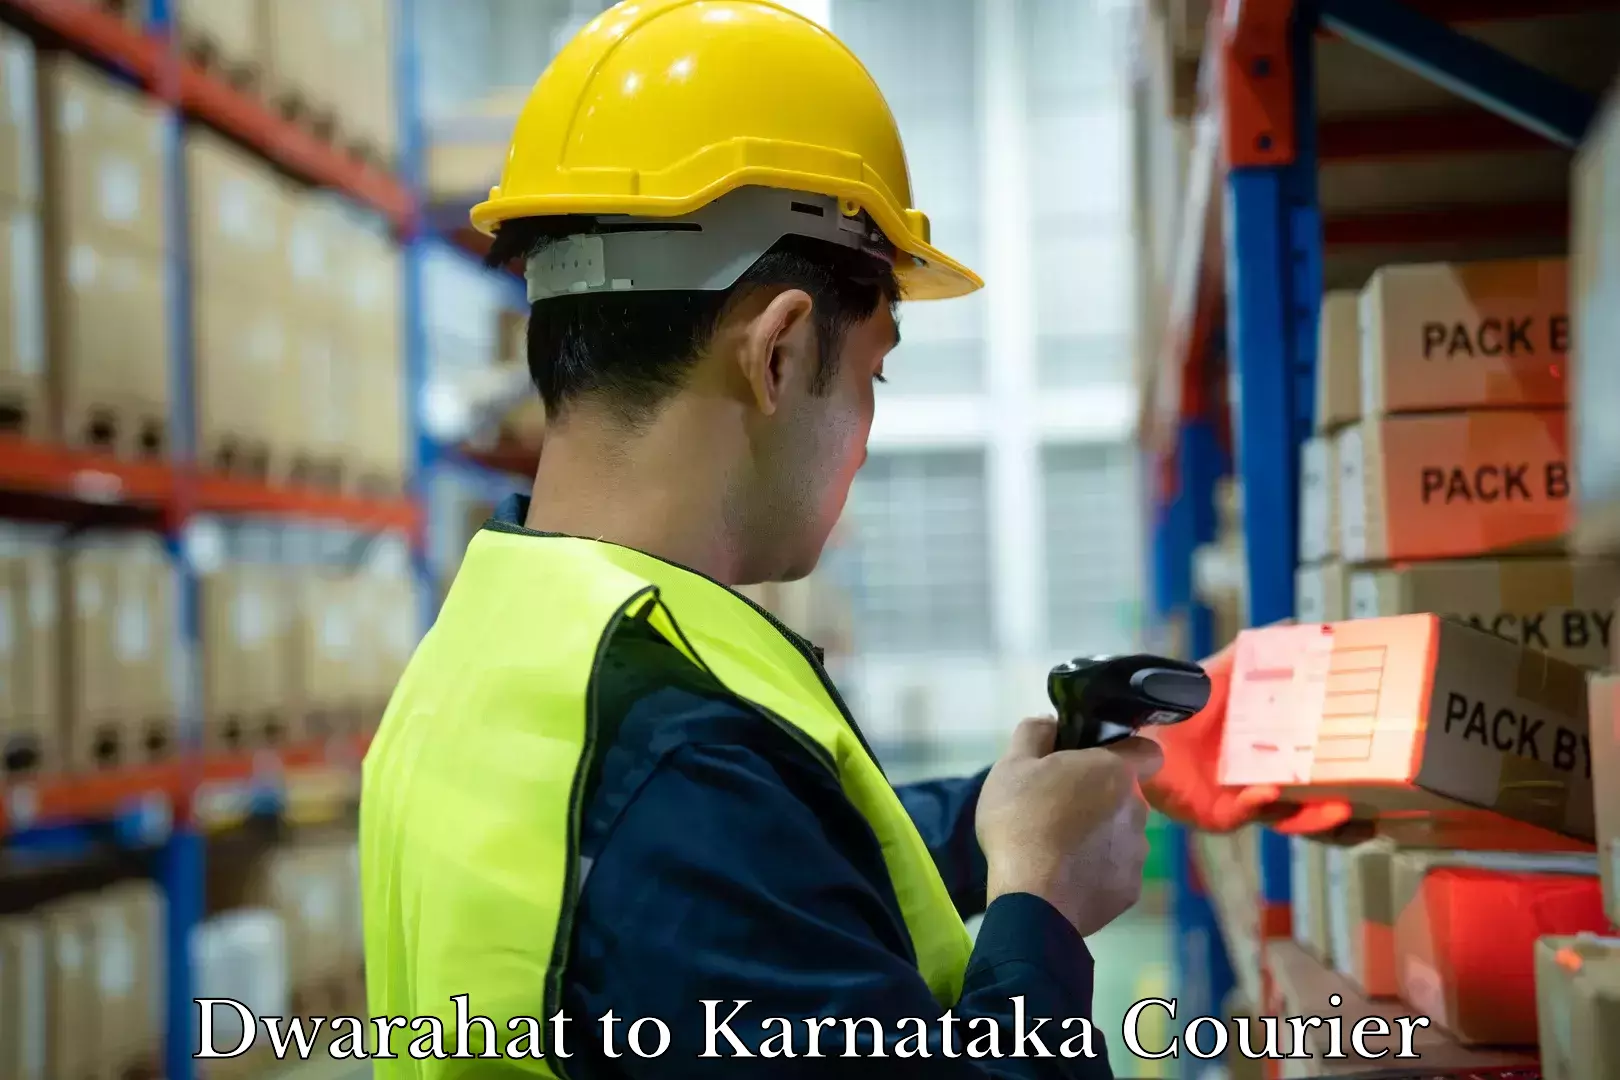 Baggage shipping service Dwarahat to Karnataka